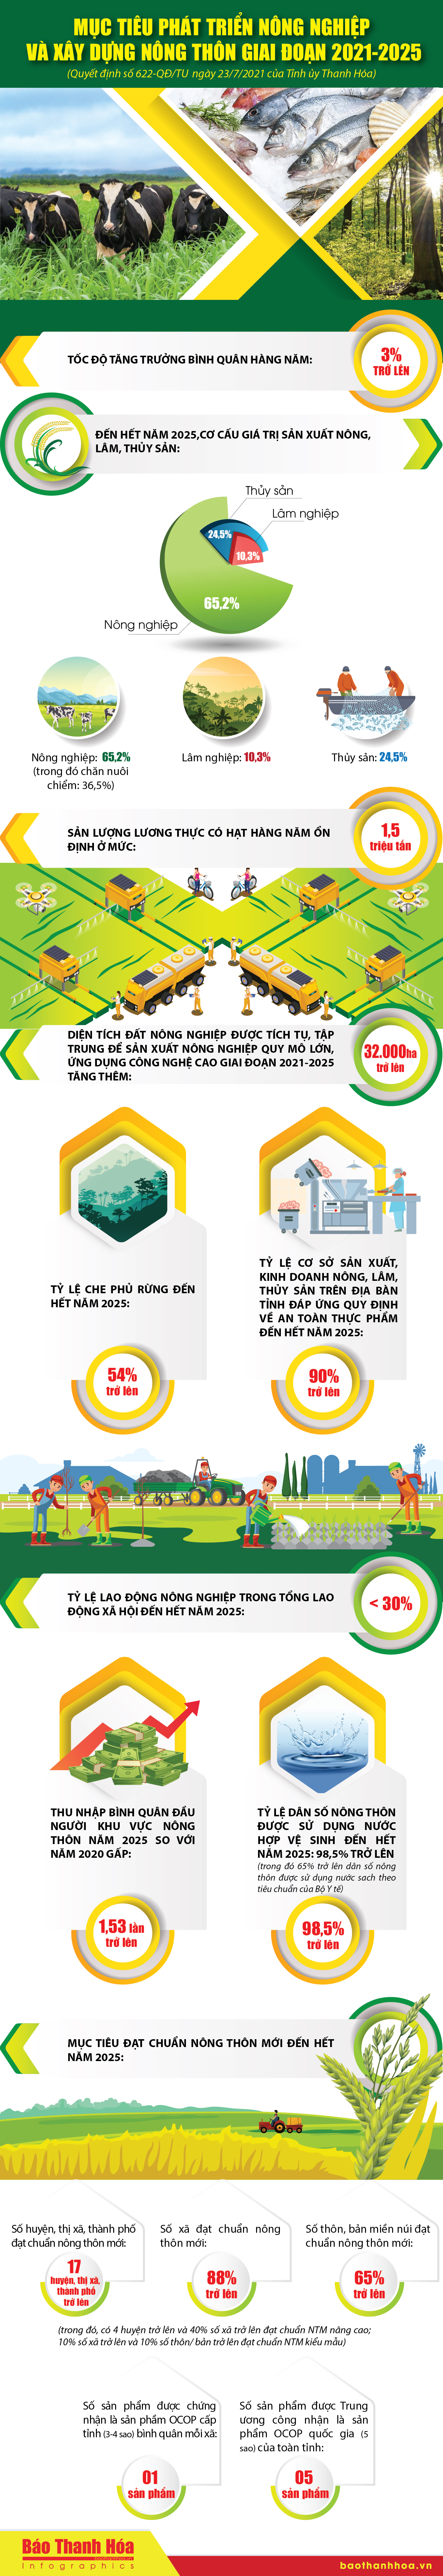 [Infographic]- Mục tiêu phát triển nông nghiệp và xây dựng nông thôn mới giai đoạn 2021-2025